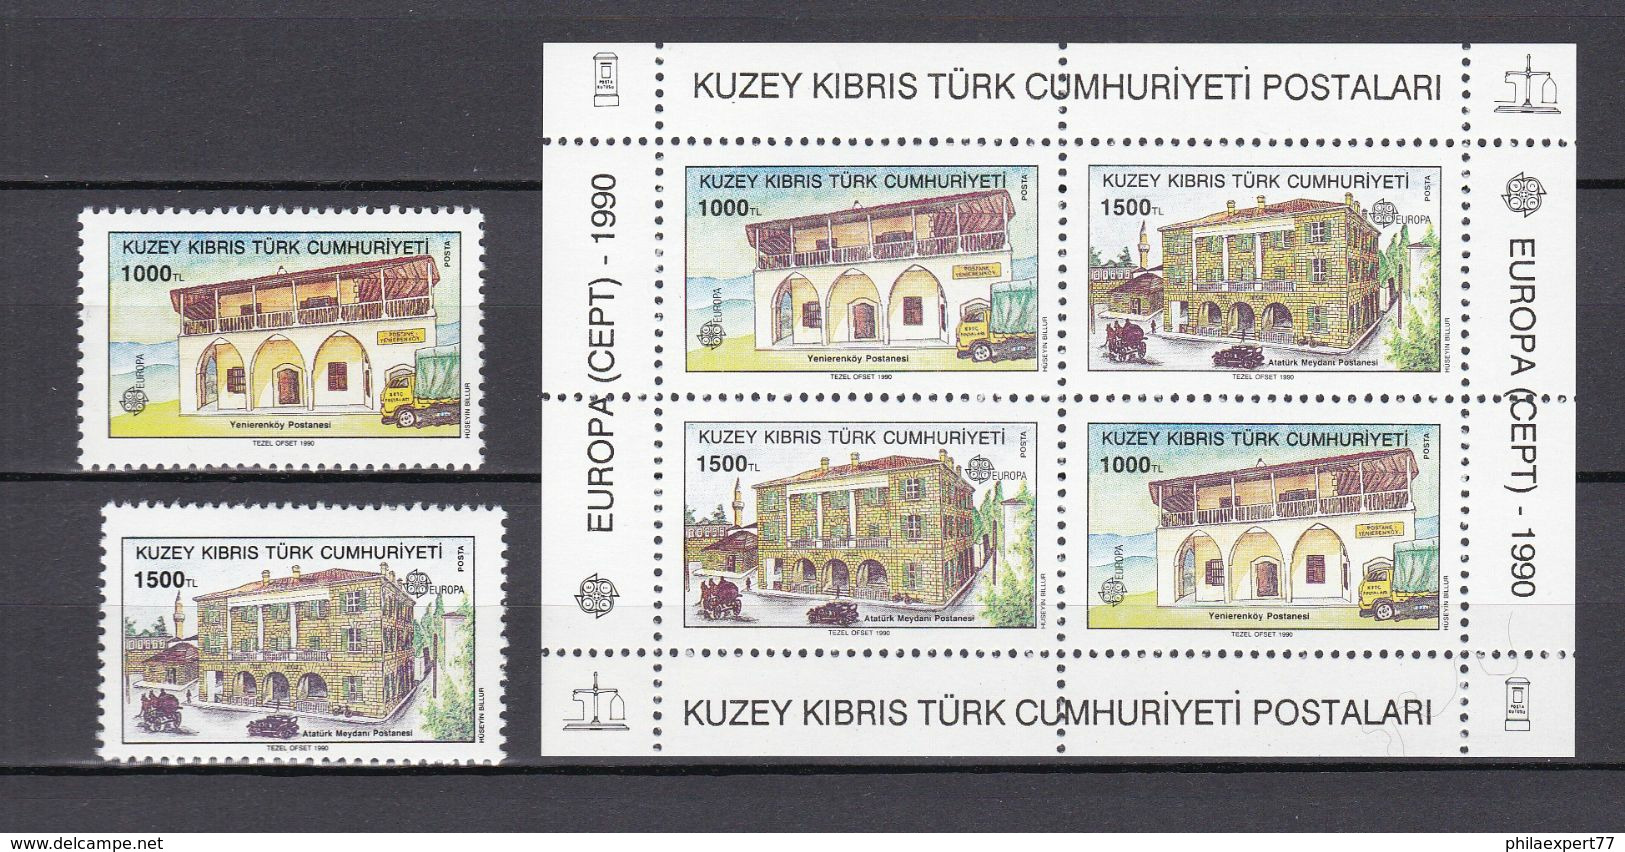 Europa-CEPT - Türkisch - Zypern - 1990 - Michel Nr. 273/274+ Block 8 - Postfrisch - 28 Euro - 1990